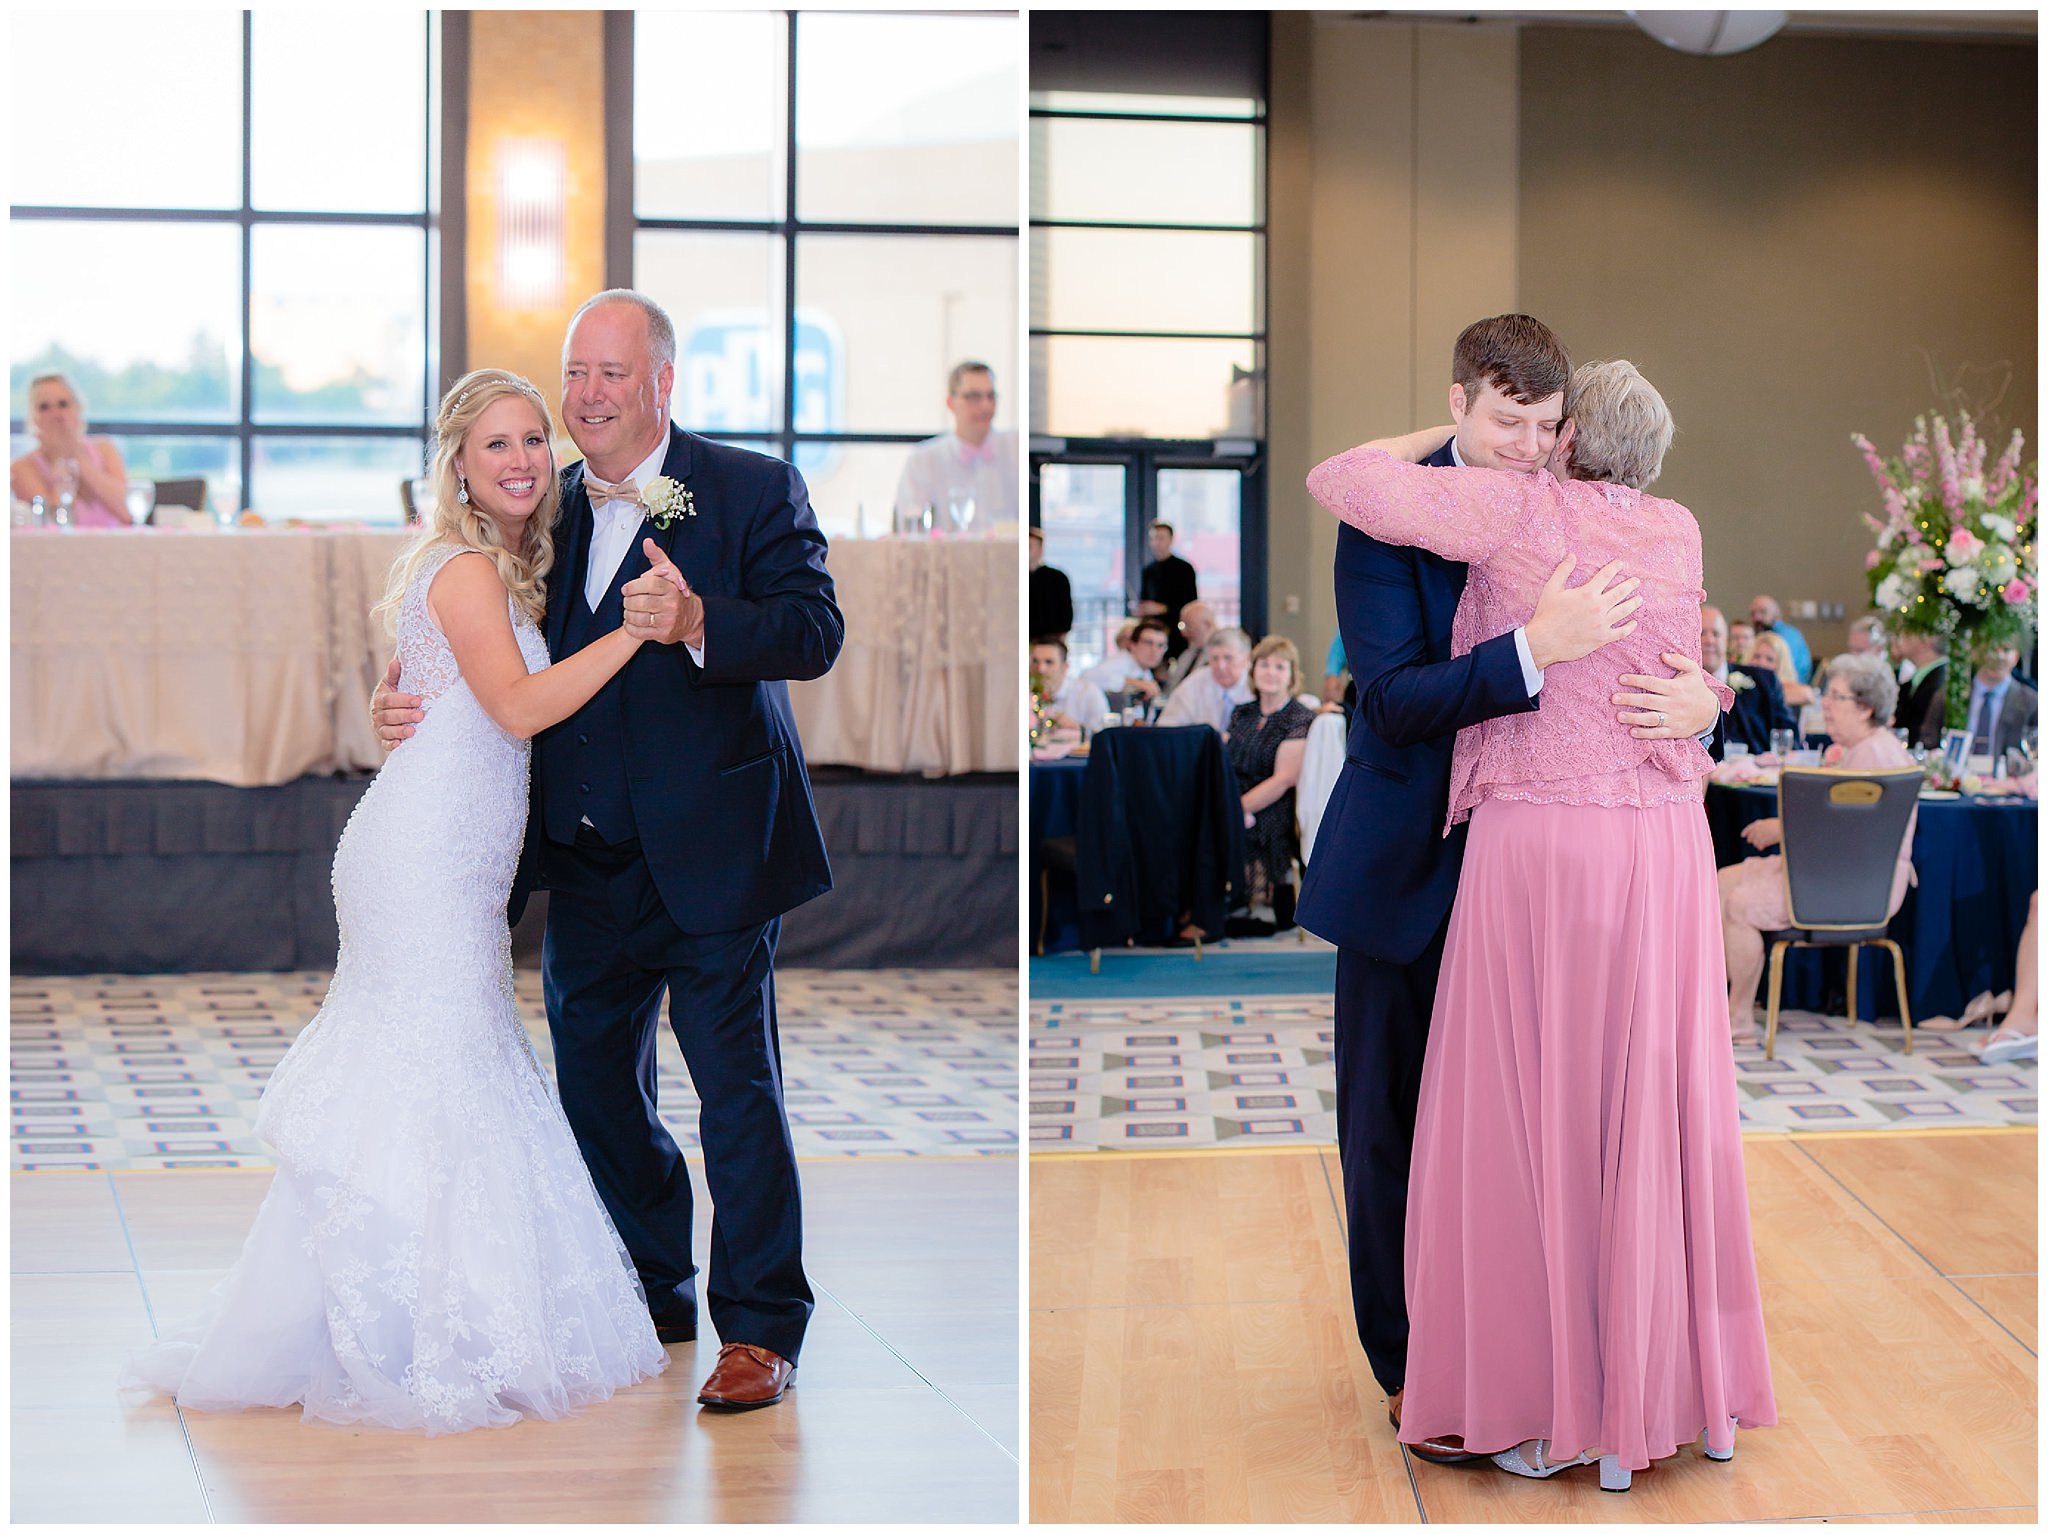 Parent dances at a Duquesne University wedding